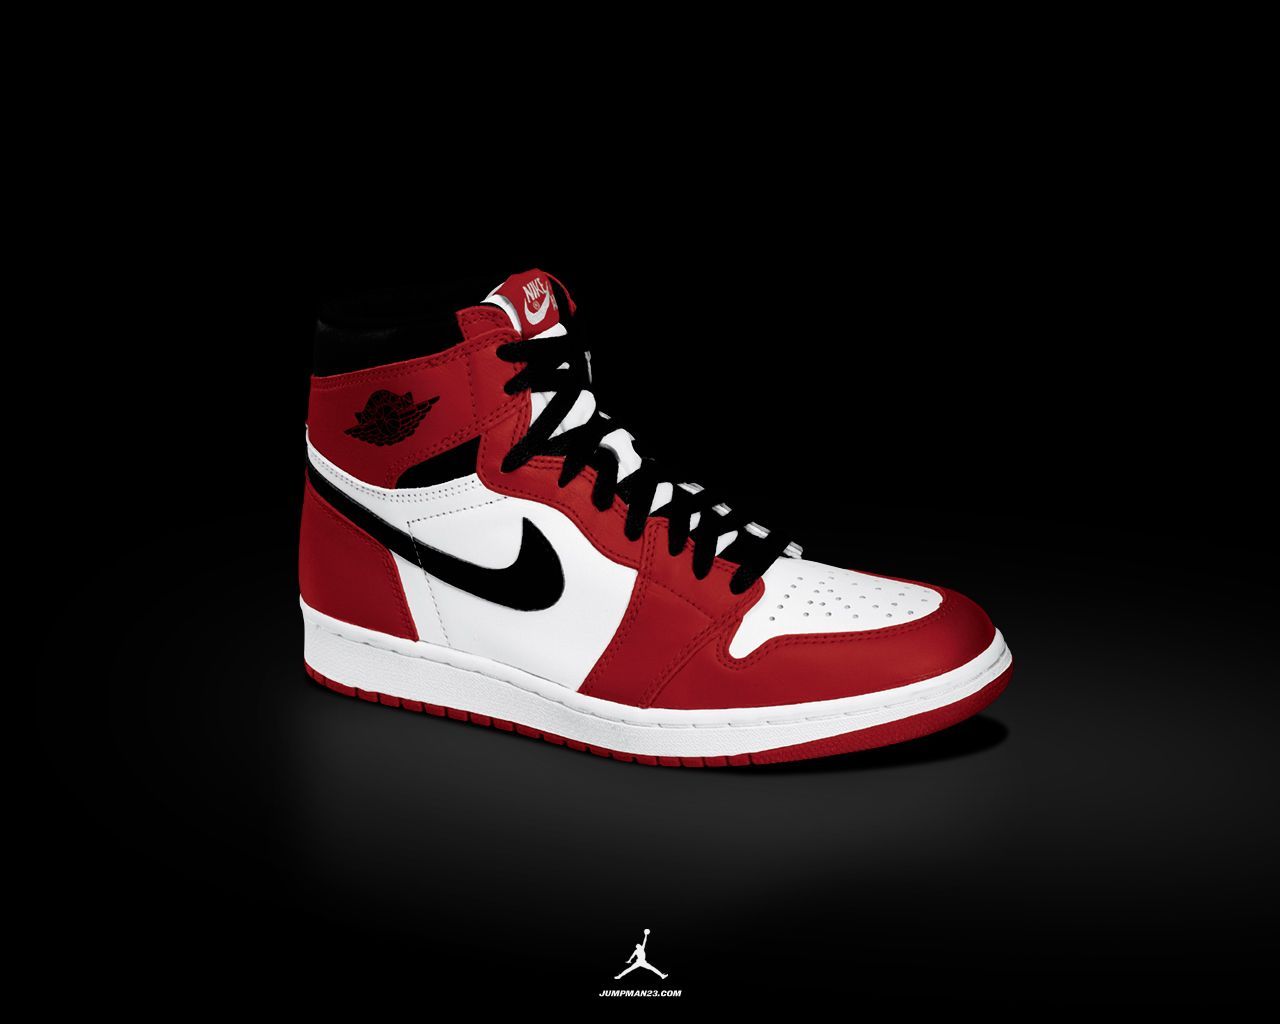 Nike Air Jordan Wallpaper and Iconic Image for Desktops (2021)